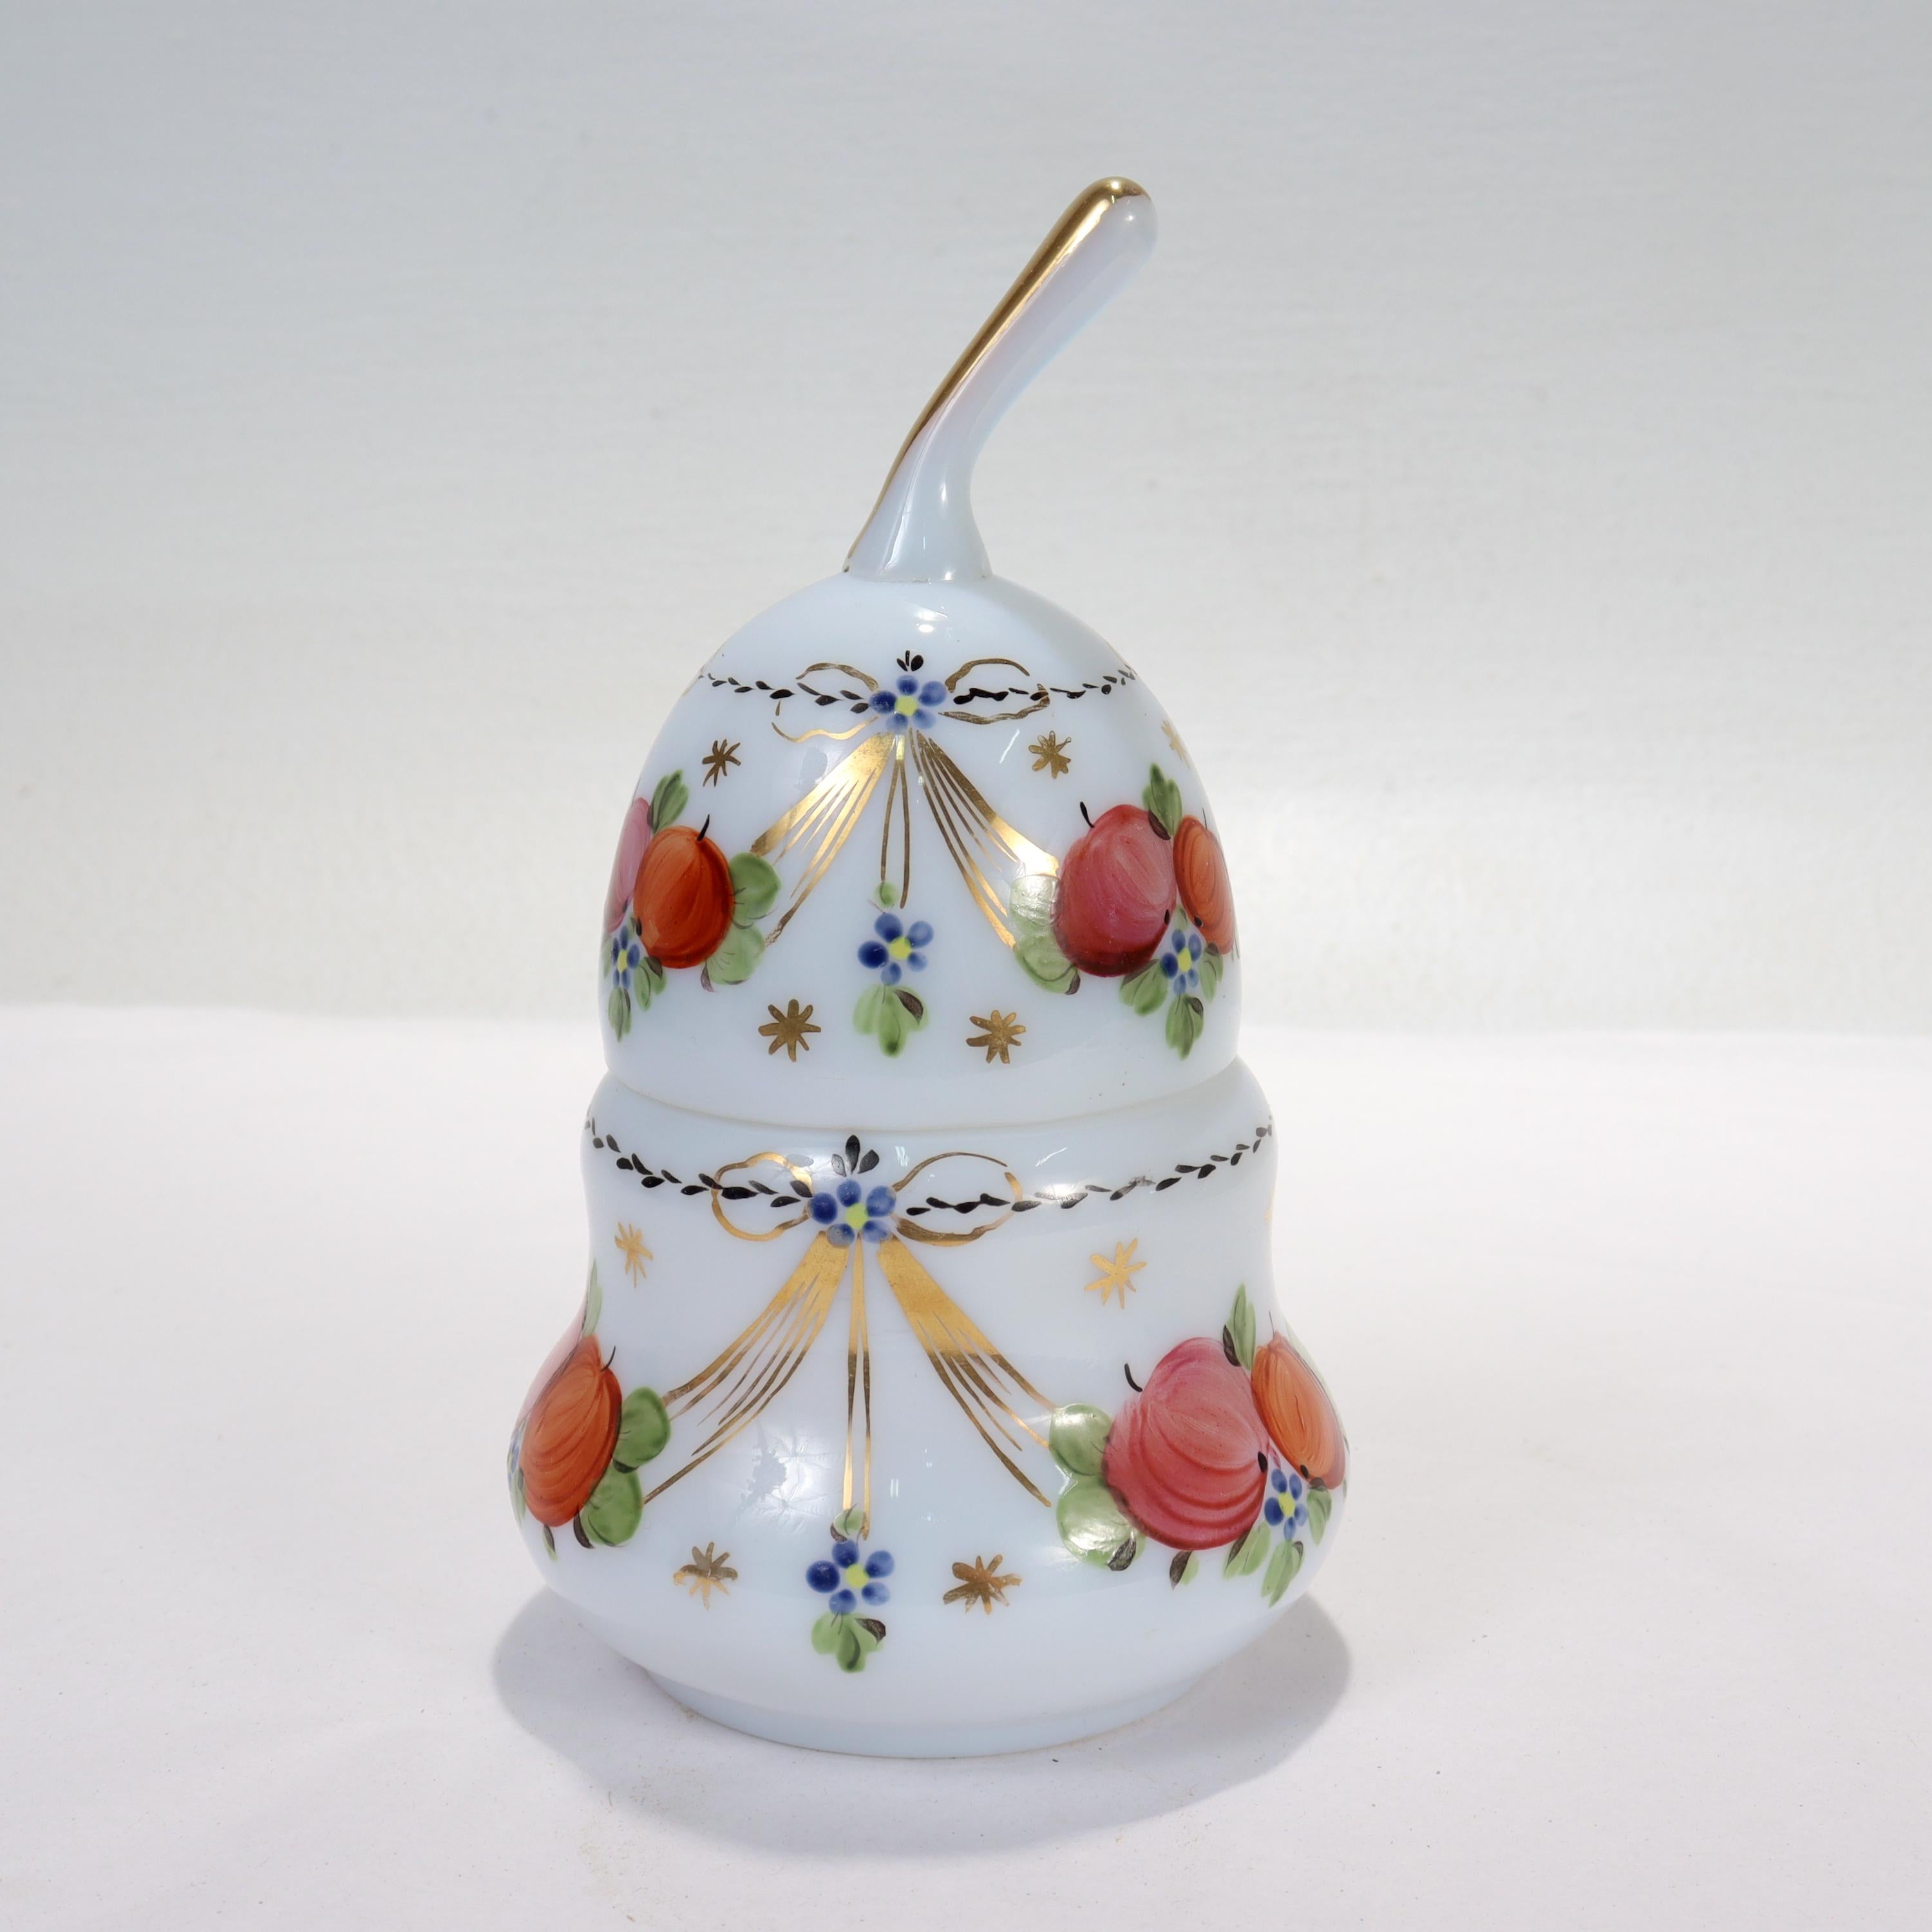 Ein feiner Opalglaskasten (wahrscheinlich französisch).

In der stilisierten Form einer Birne.

Sowohl der Korpus als auch der Deckel aus weißem Opalglas sind mit handgemalten Früchten und Blumen verziert und reich vergoldet. 

Einfach eine